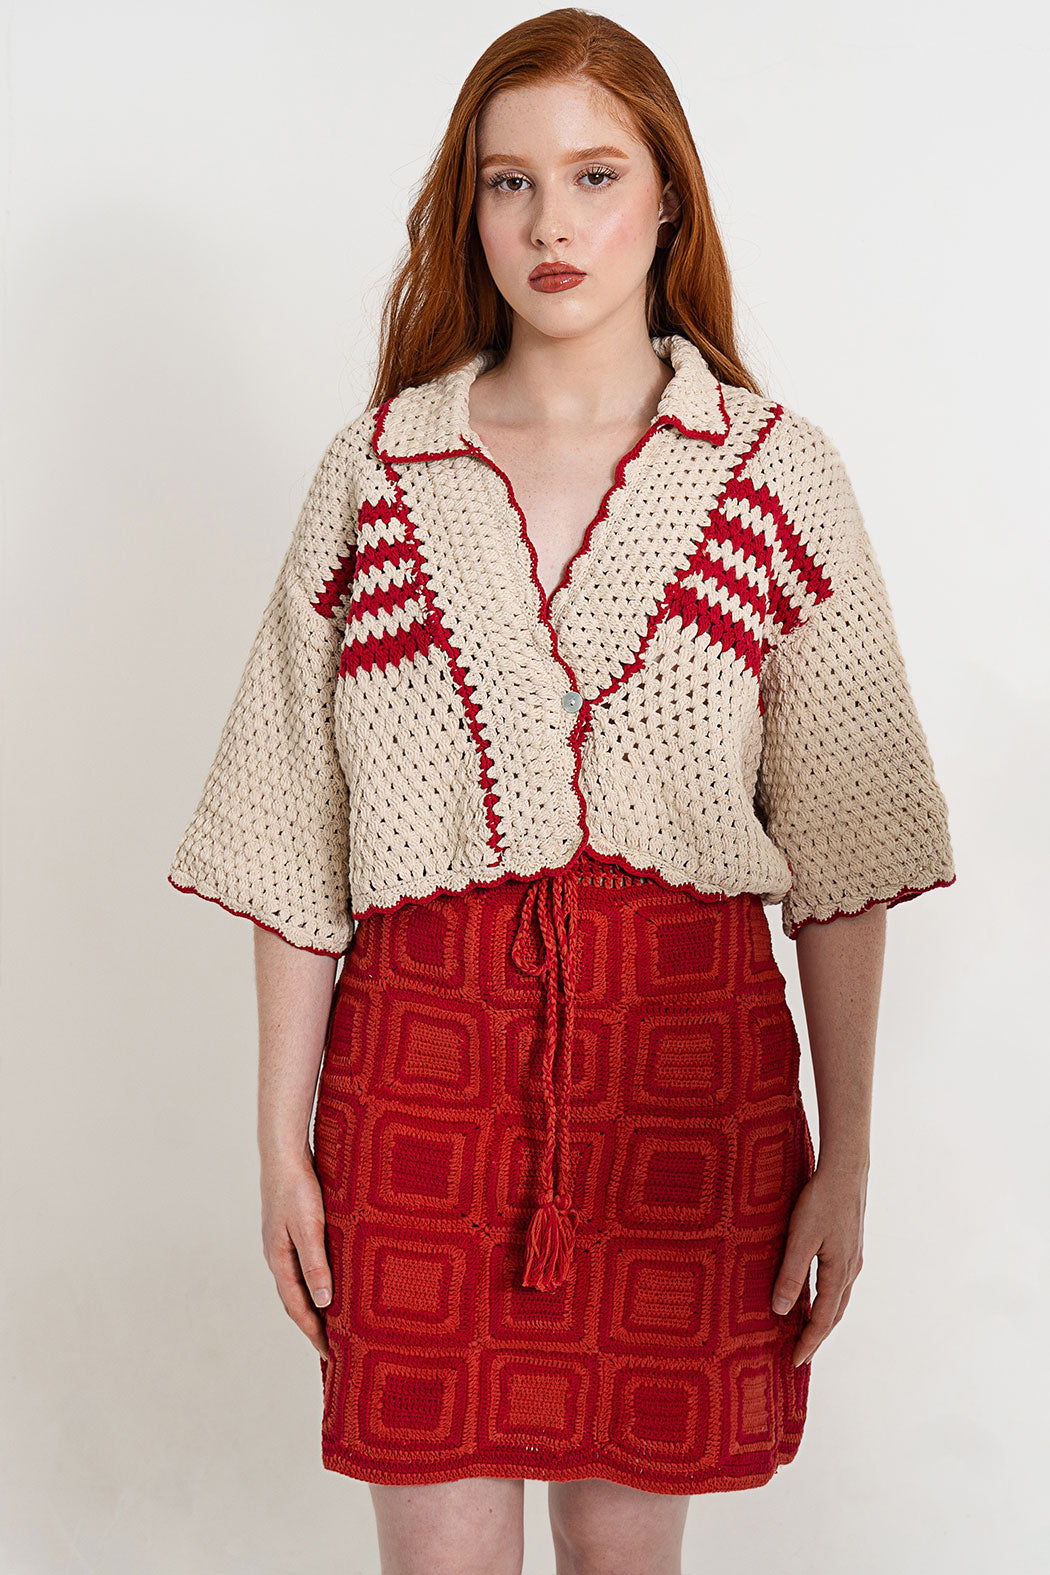 Sevilla Crochet Mini Skirt by Hess